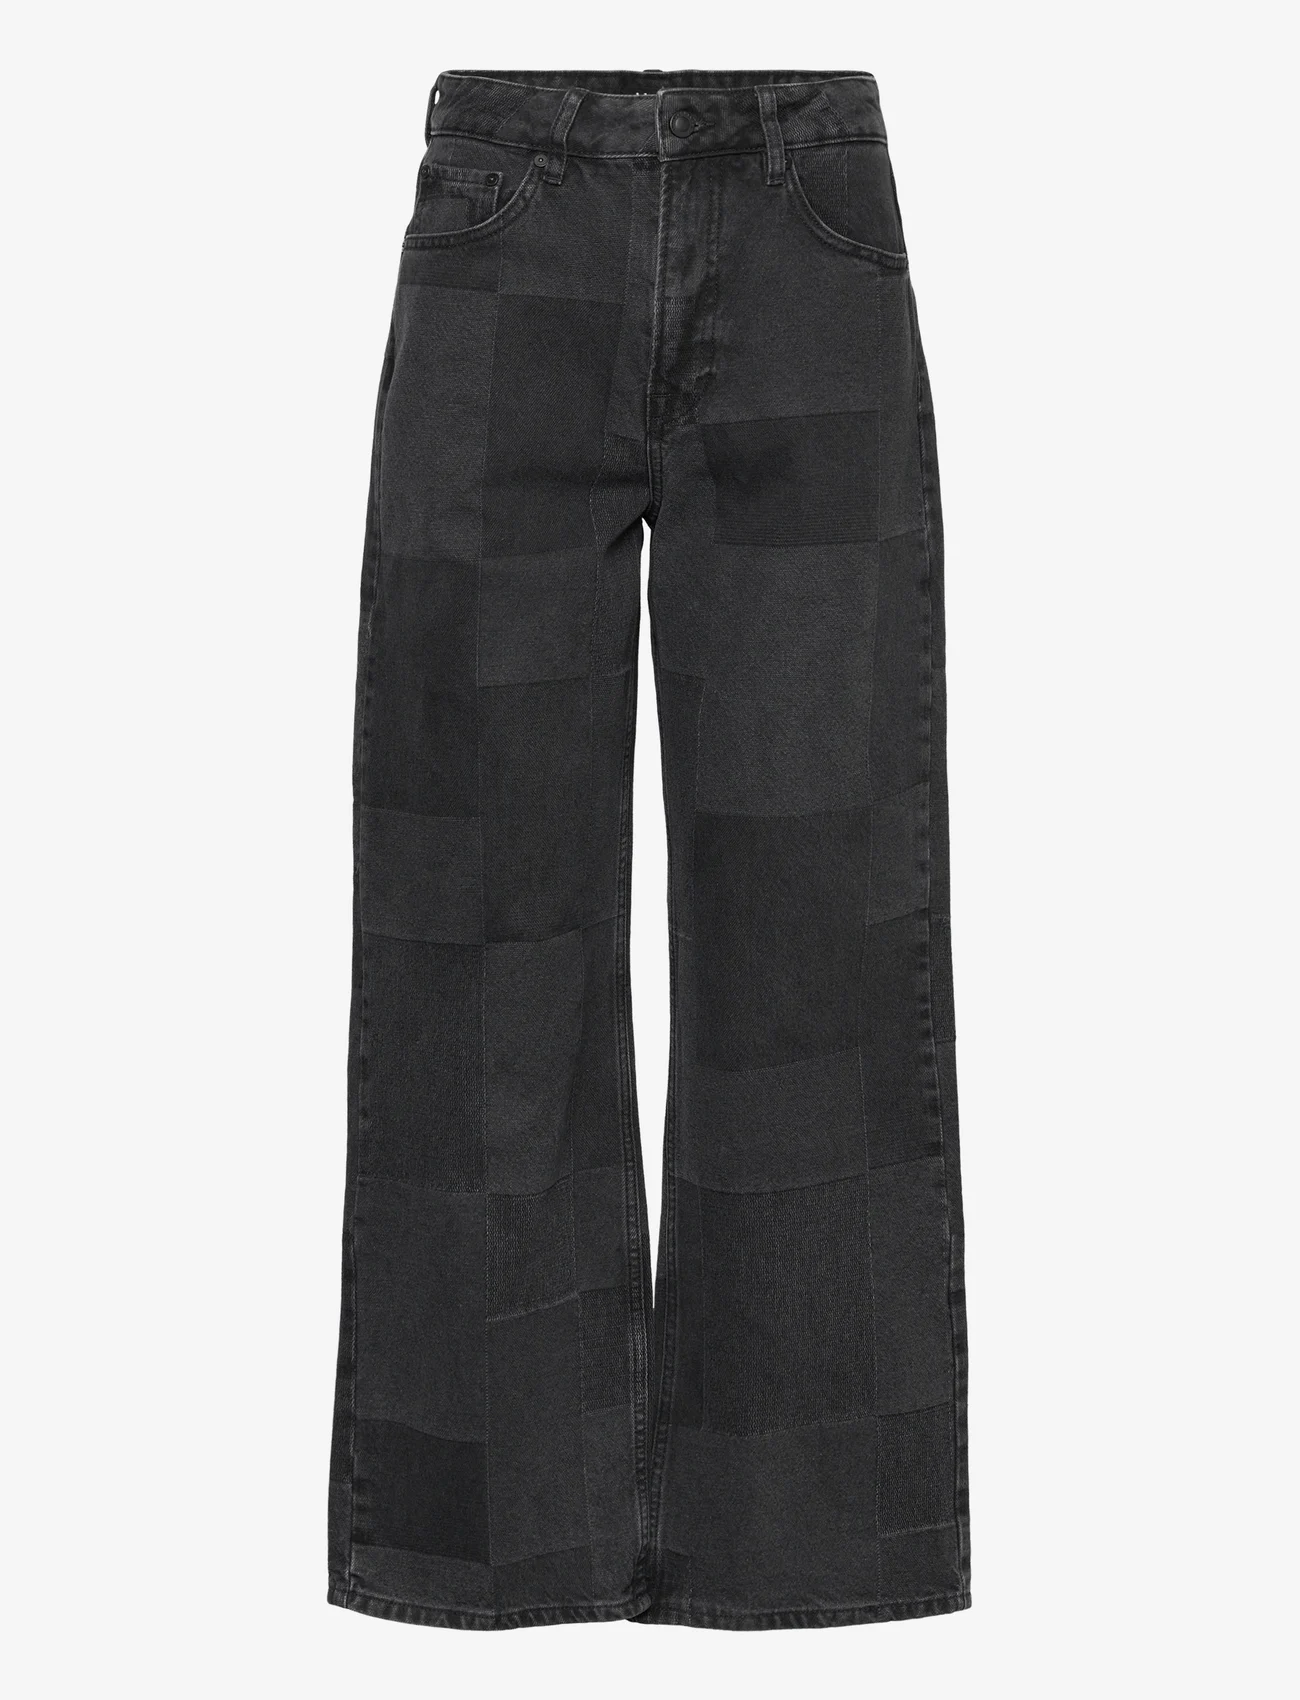 IVY Copenhagen - IVY-Brooke Patchwork Jeans Wash Bla - spodnie szerokie - black - 0